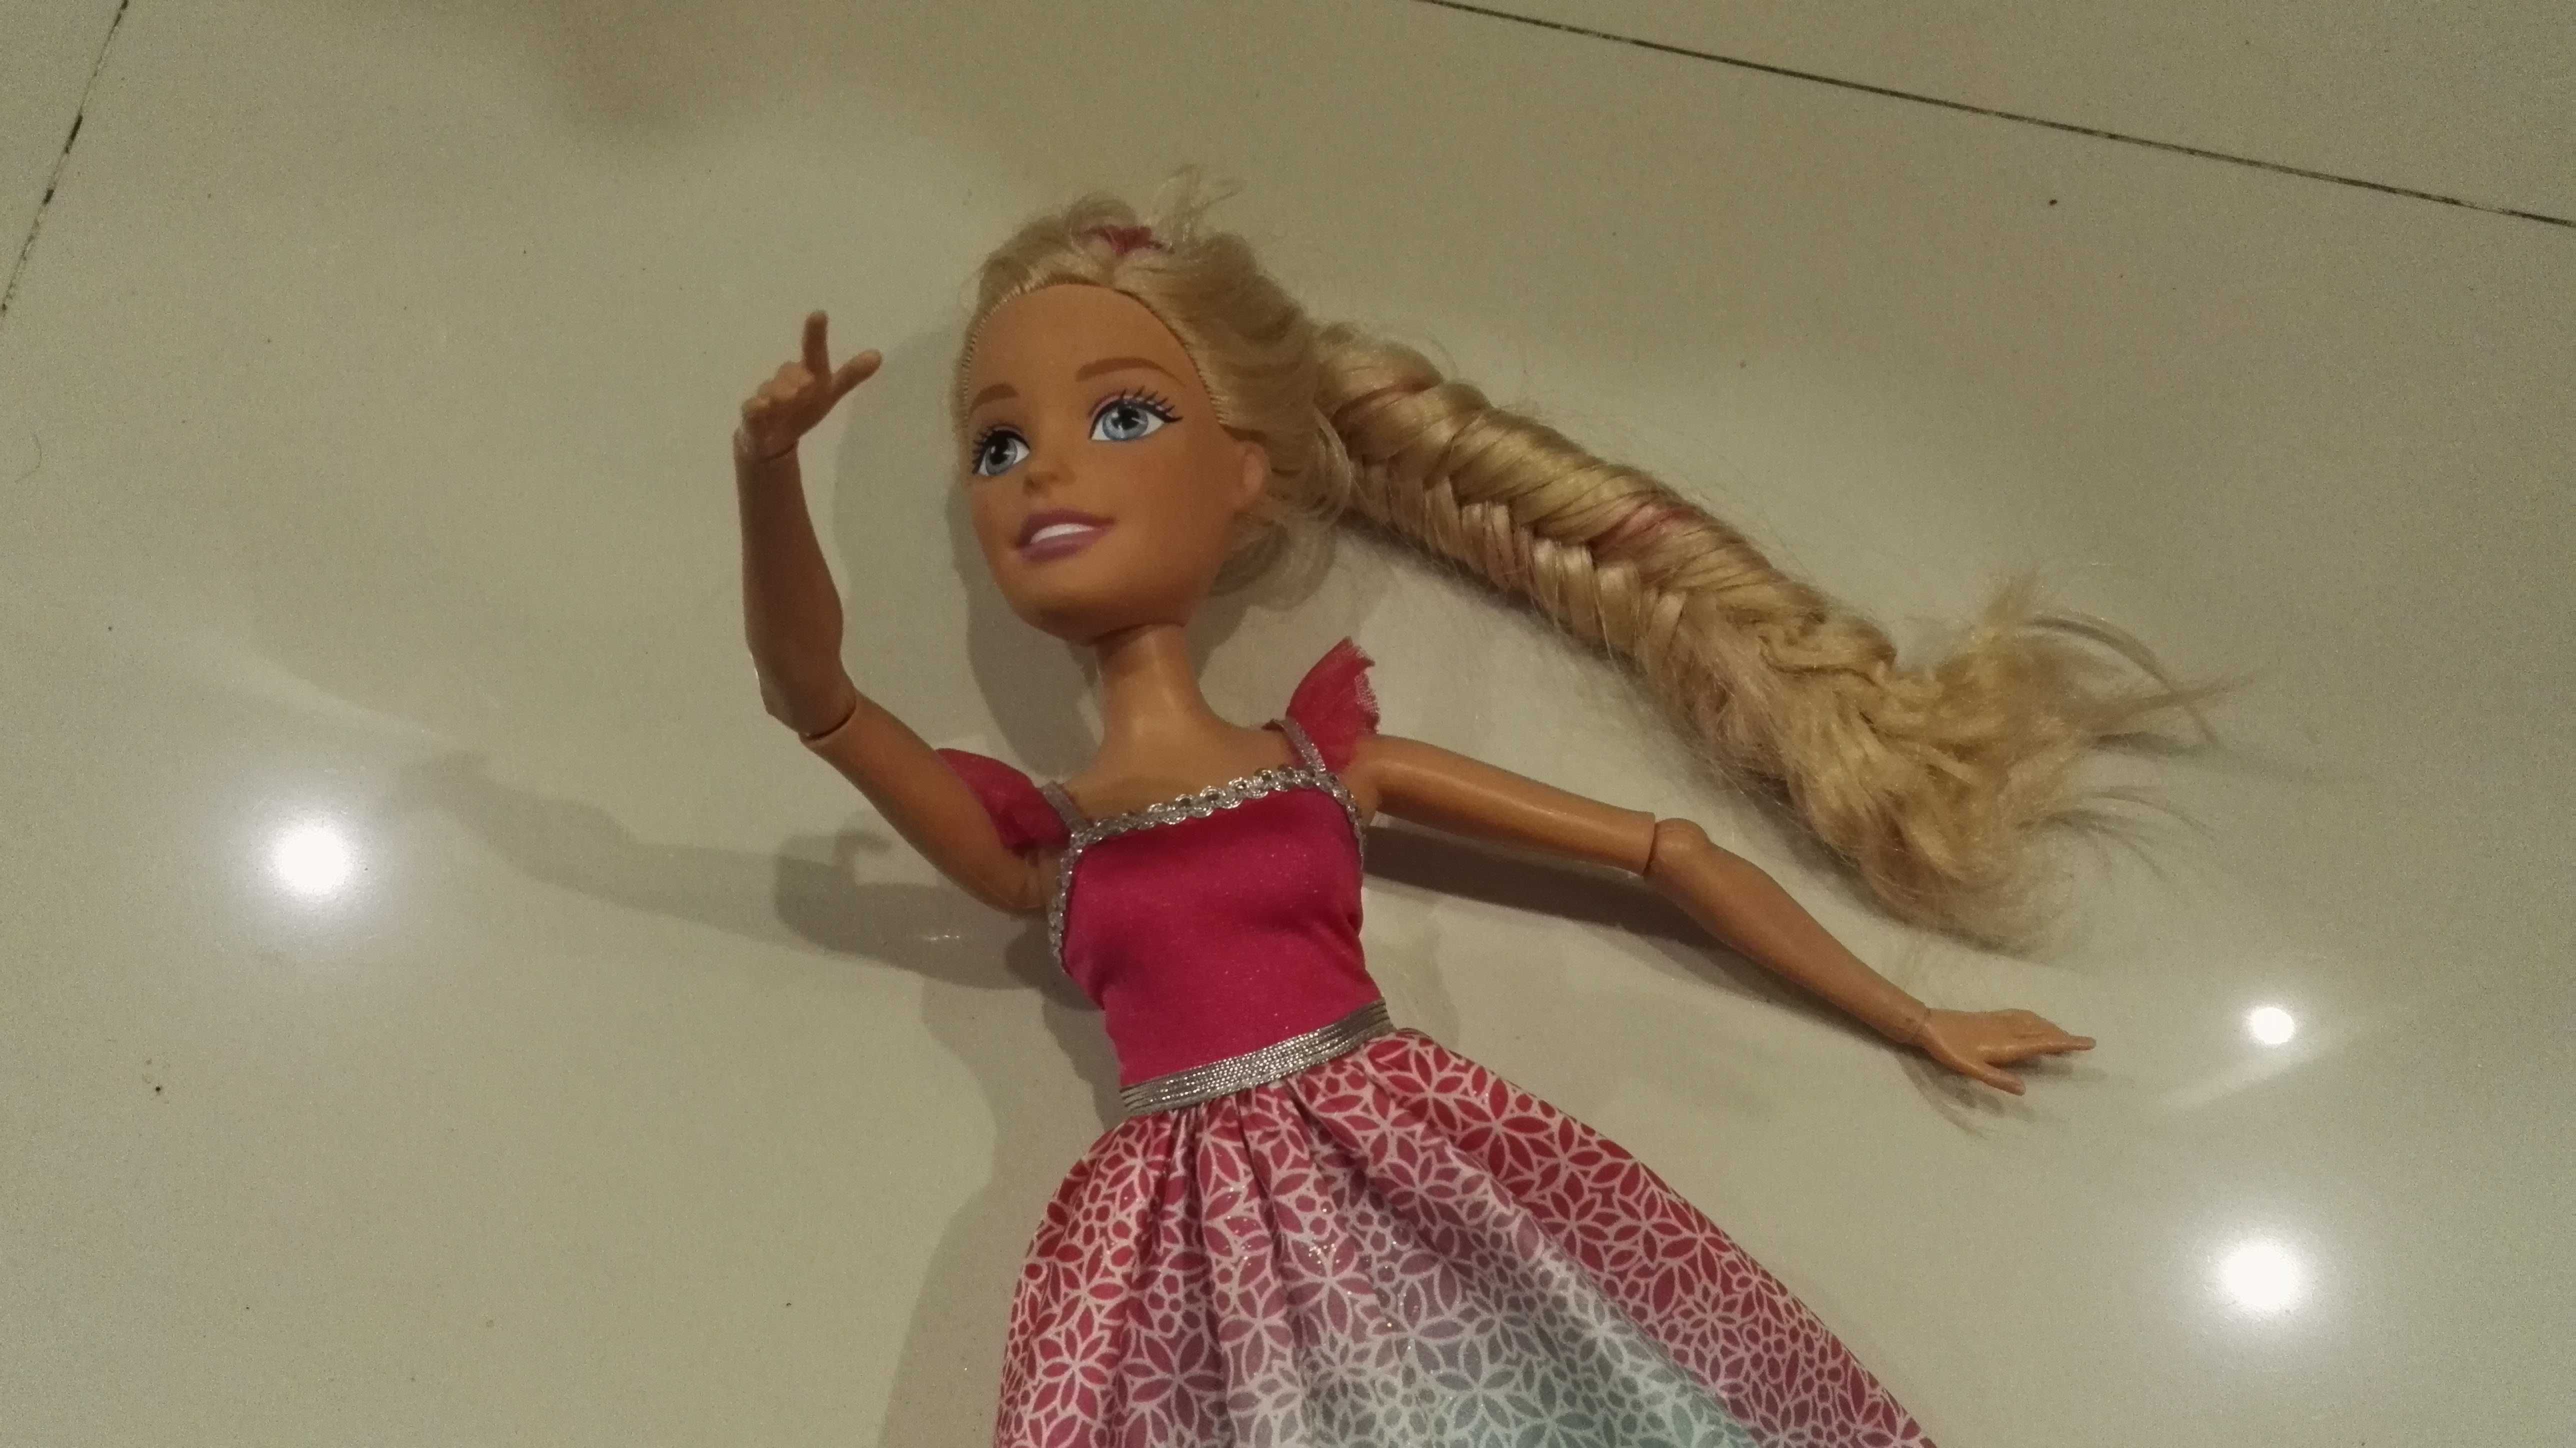 Duża  Lalka BARBIE  Blond włosy 43CM do czesanie  firmy Mattel  < no 4